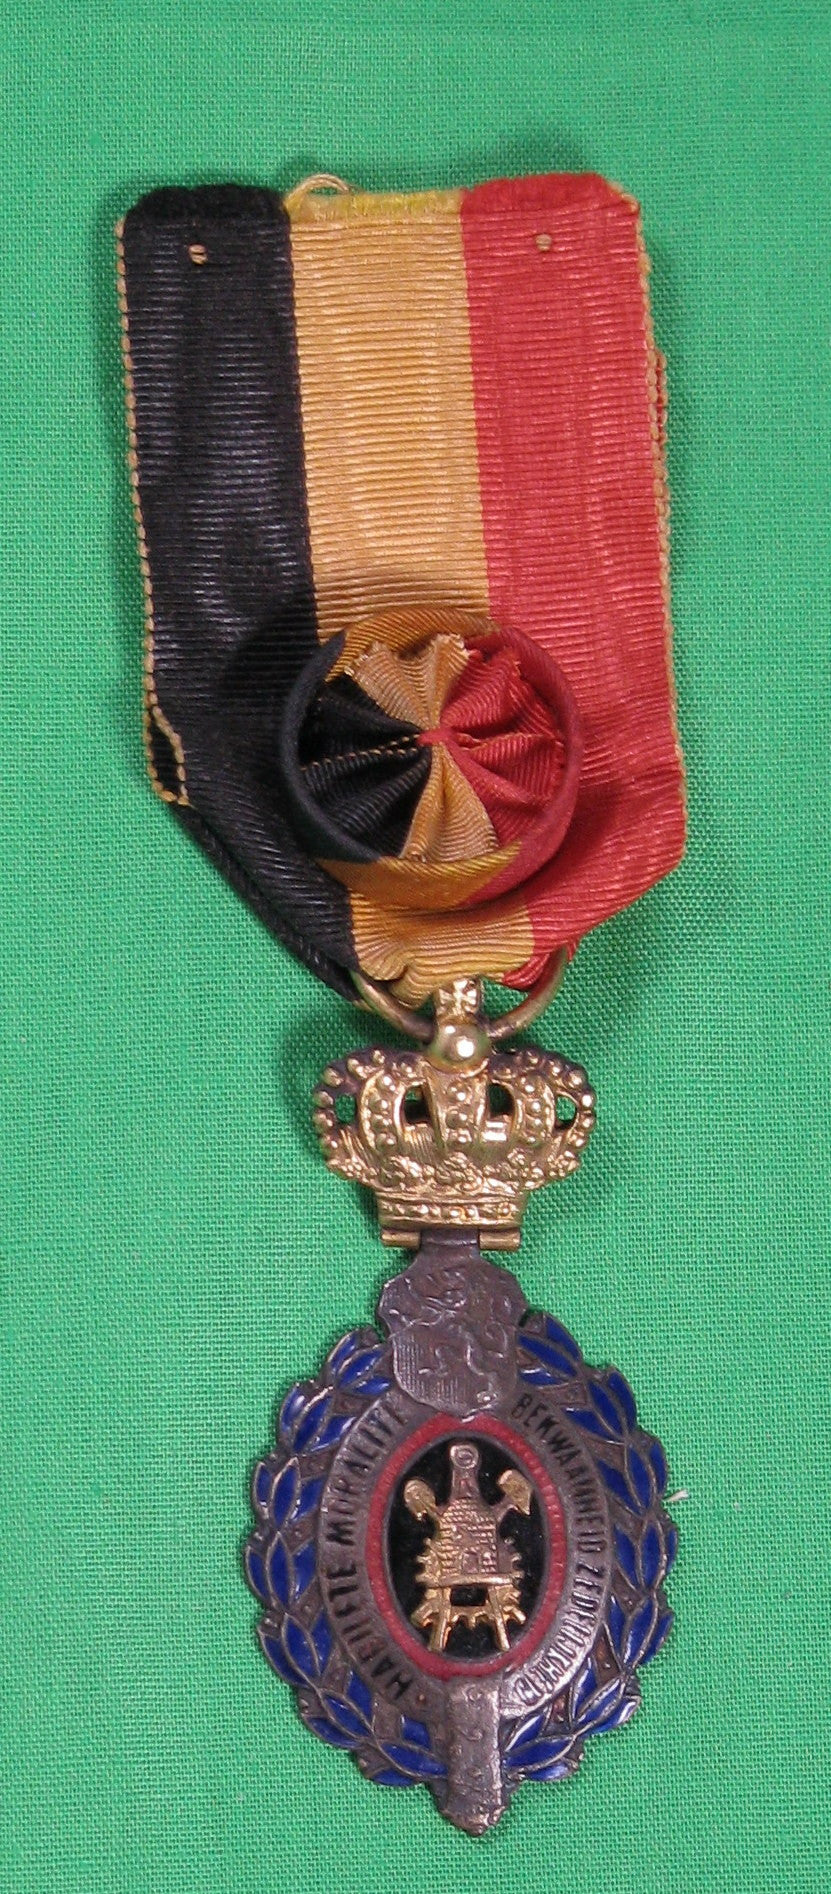 Belgium medal - Labour Decoration / Belgique médaille -  Décoration du Travail